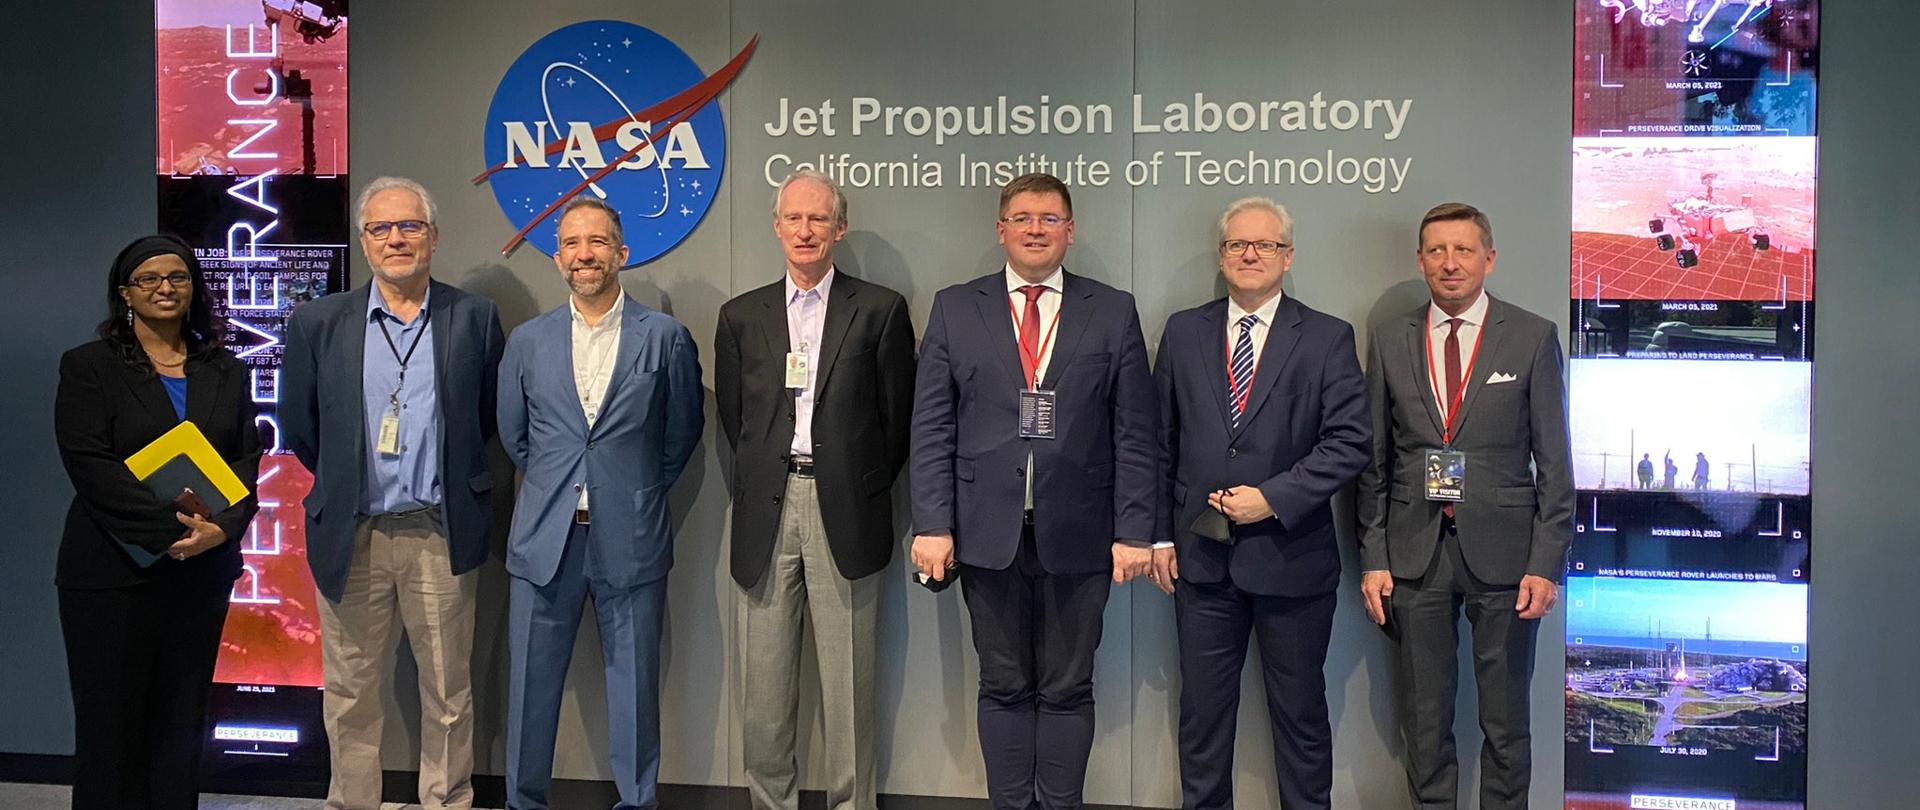 Wizyta wiceministra Tomasza Rzymkowskiego w USA, wiceminister Tomasz Rzymkowski z wizytą w NASA, pozuje do zdjęcia z pracownikami agencji.